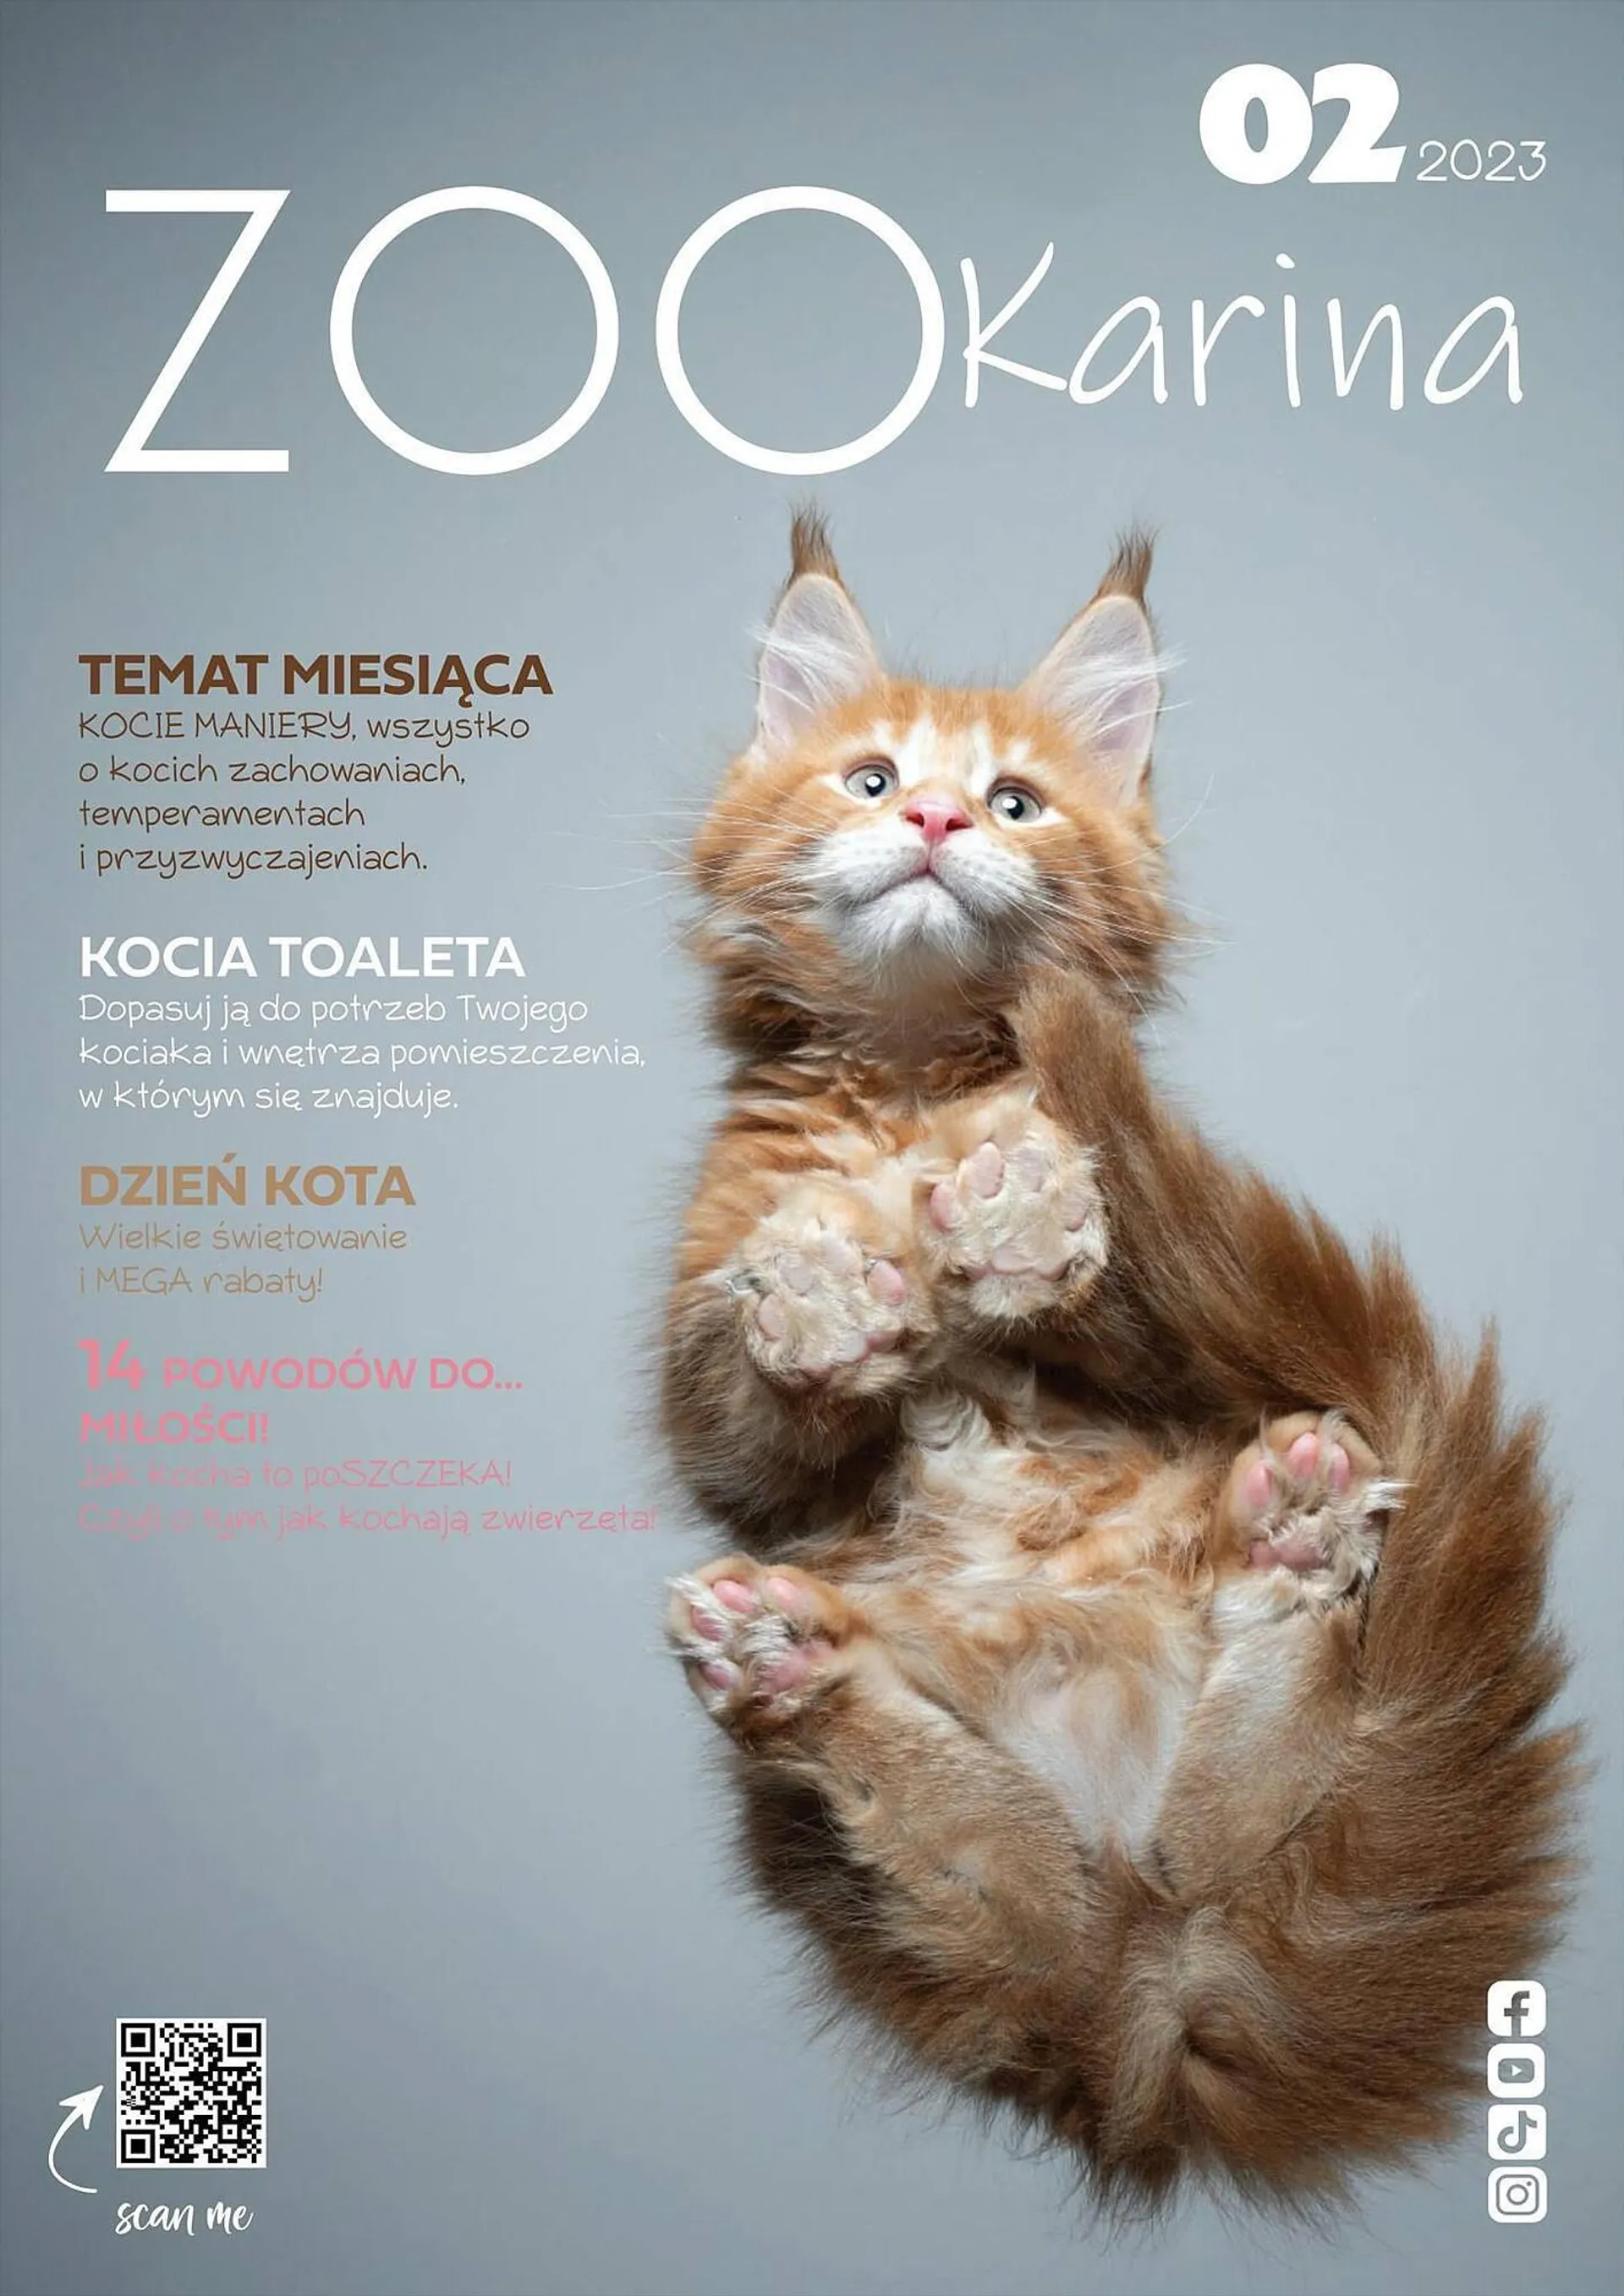 Zoo Karina gazetka - 1